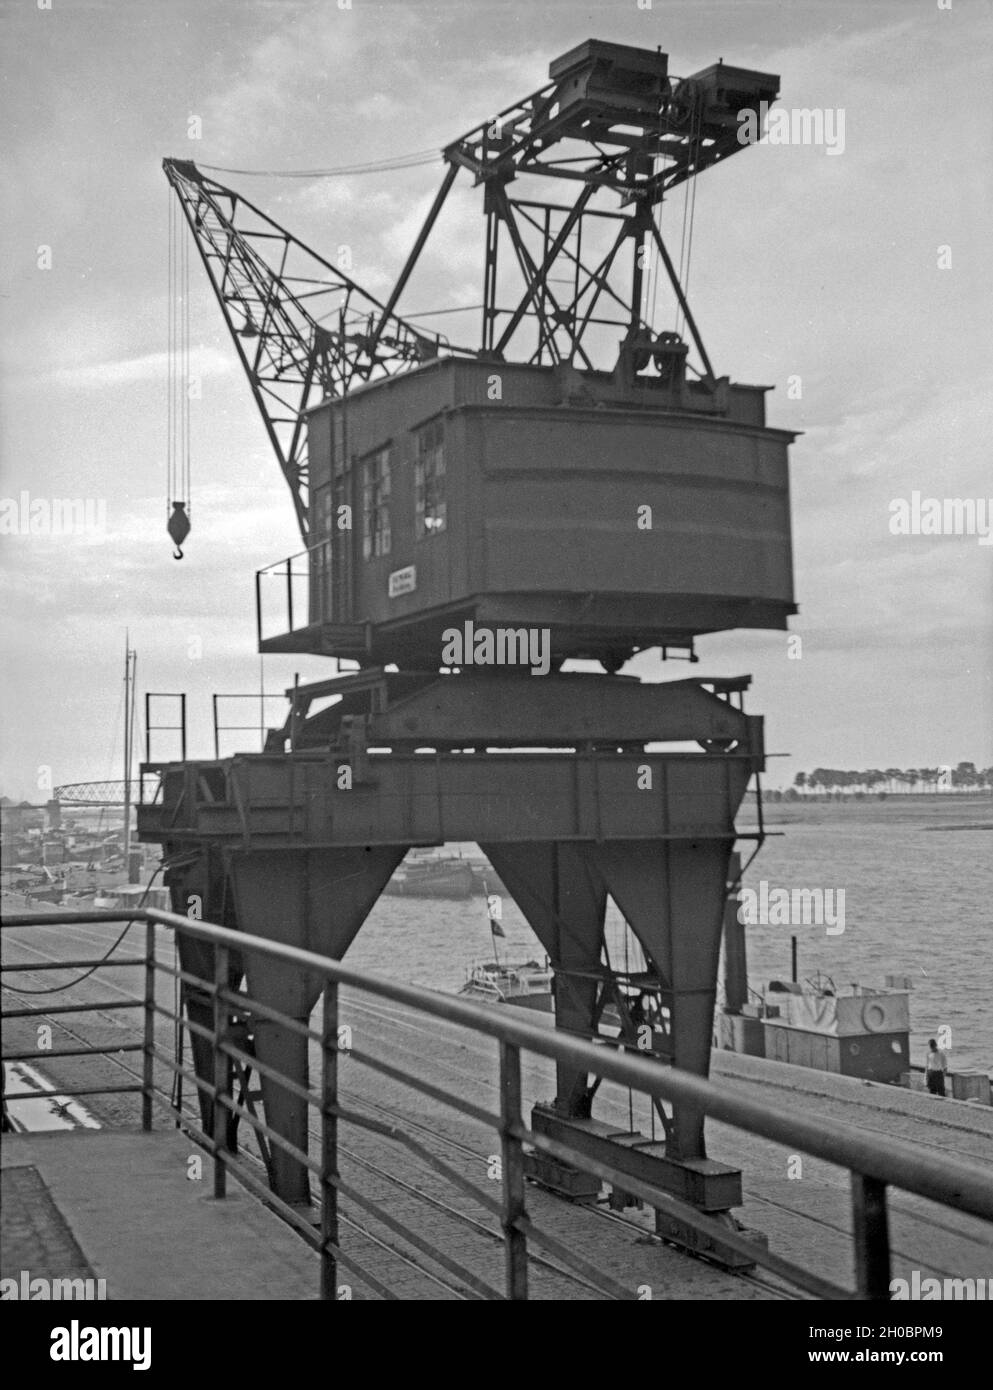 Verladekran im Hafen von Tilsit in Ostpreußen, 1930er Jahre. Crane at the harbor of Tilsit, East Prussia, 1930s. Stock Photo